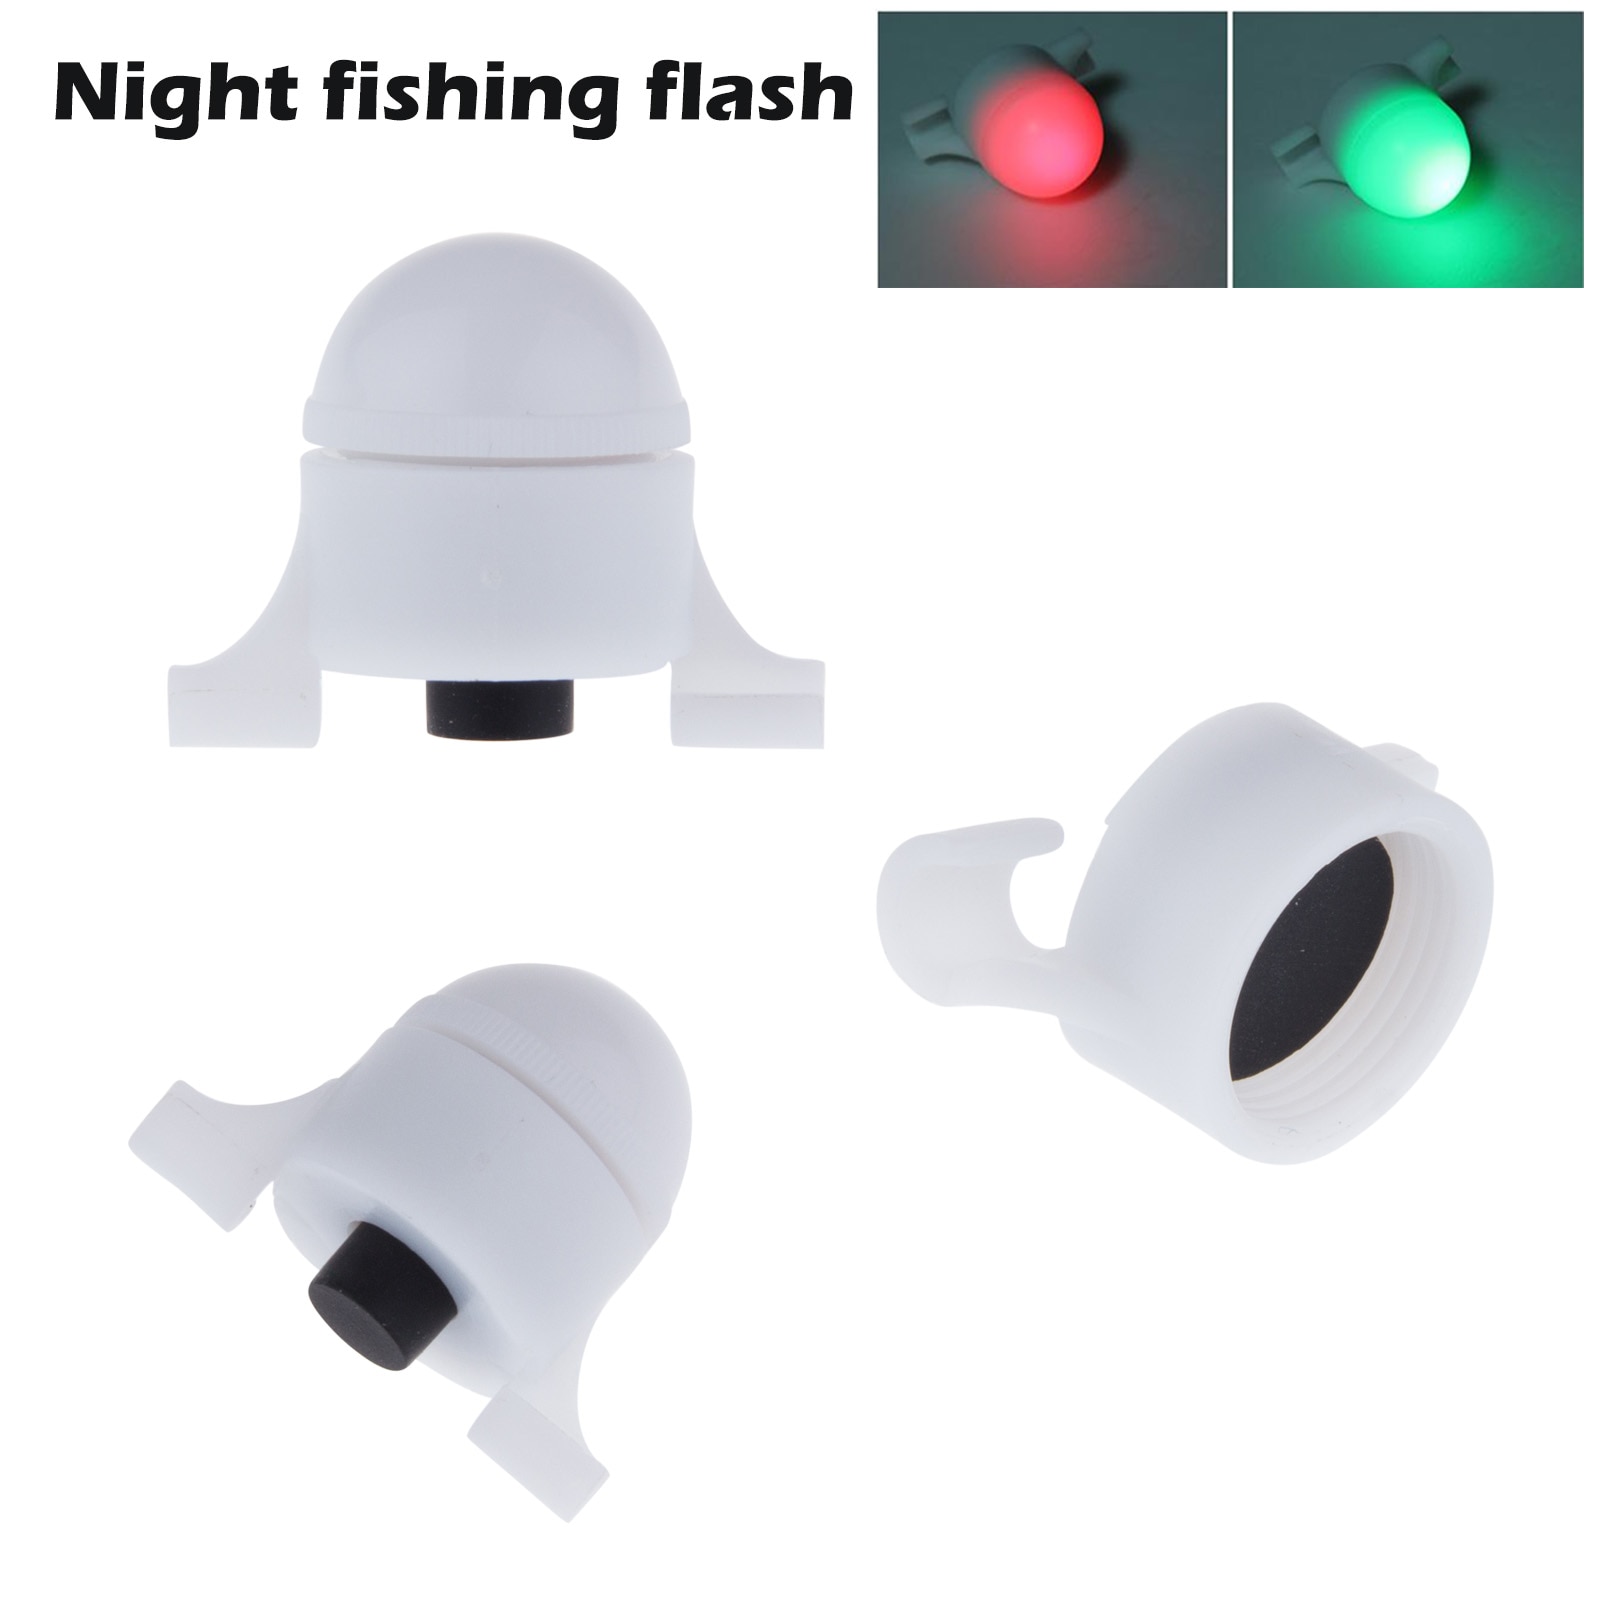 Fiskelys nyttige partier fiskeri / fest fishfinder lampe tiltrækker rejer blæksprutte natledt fiskeri tilbehør til flådefiskeri